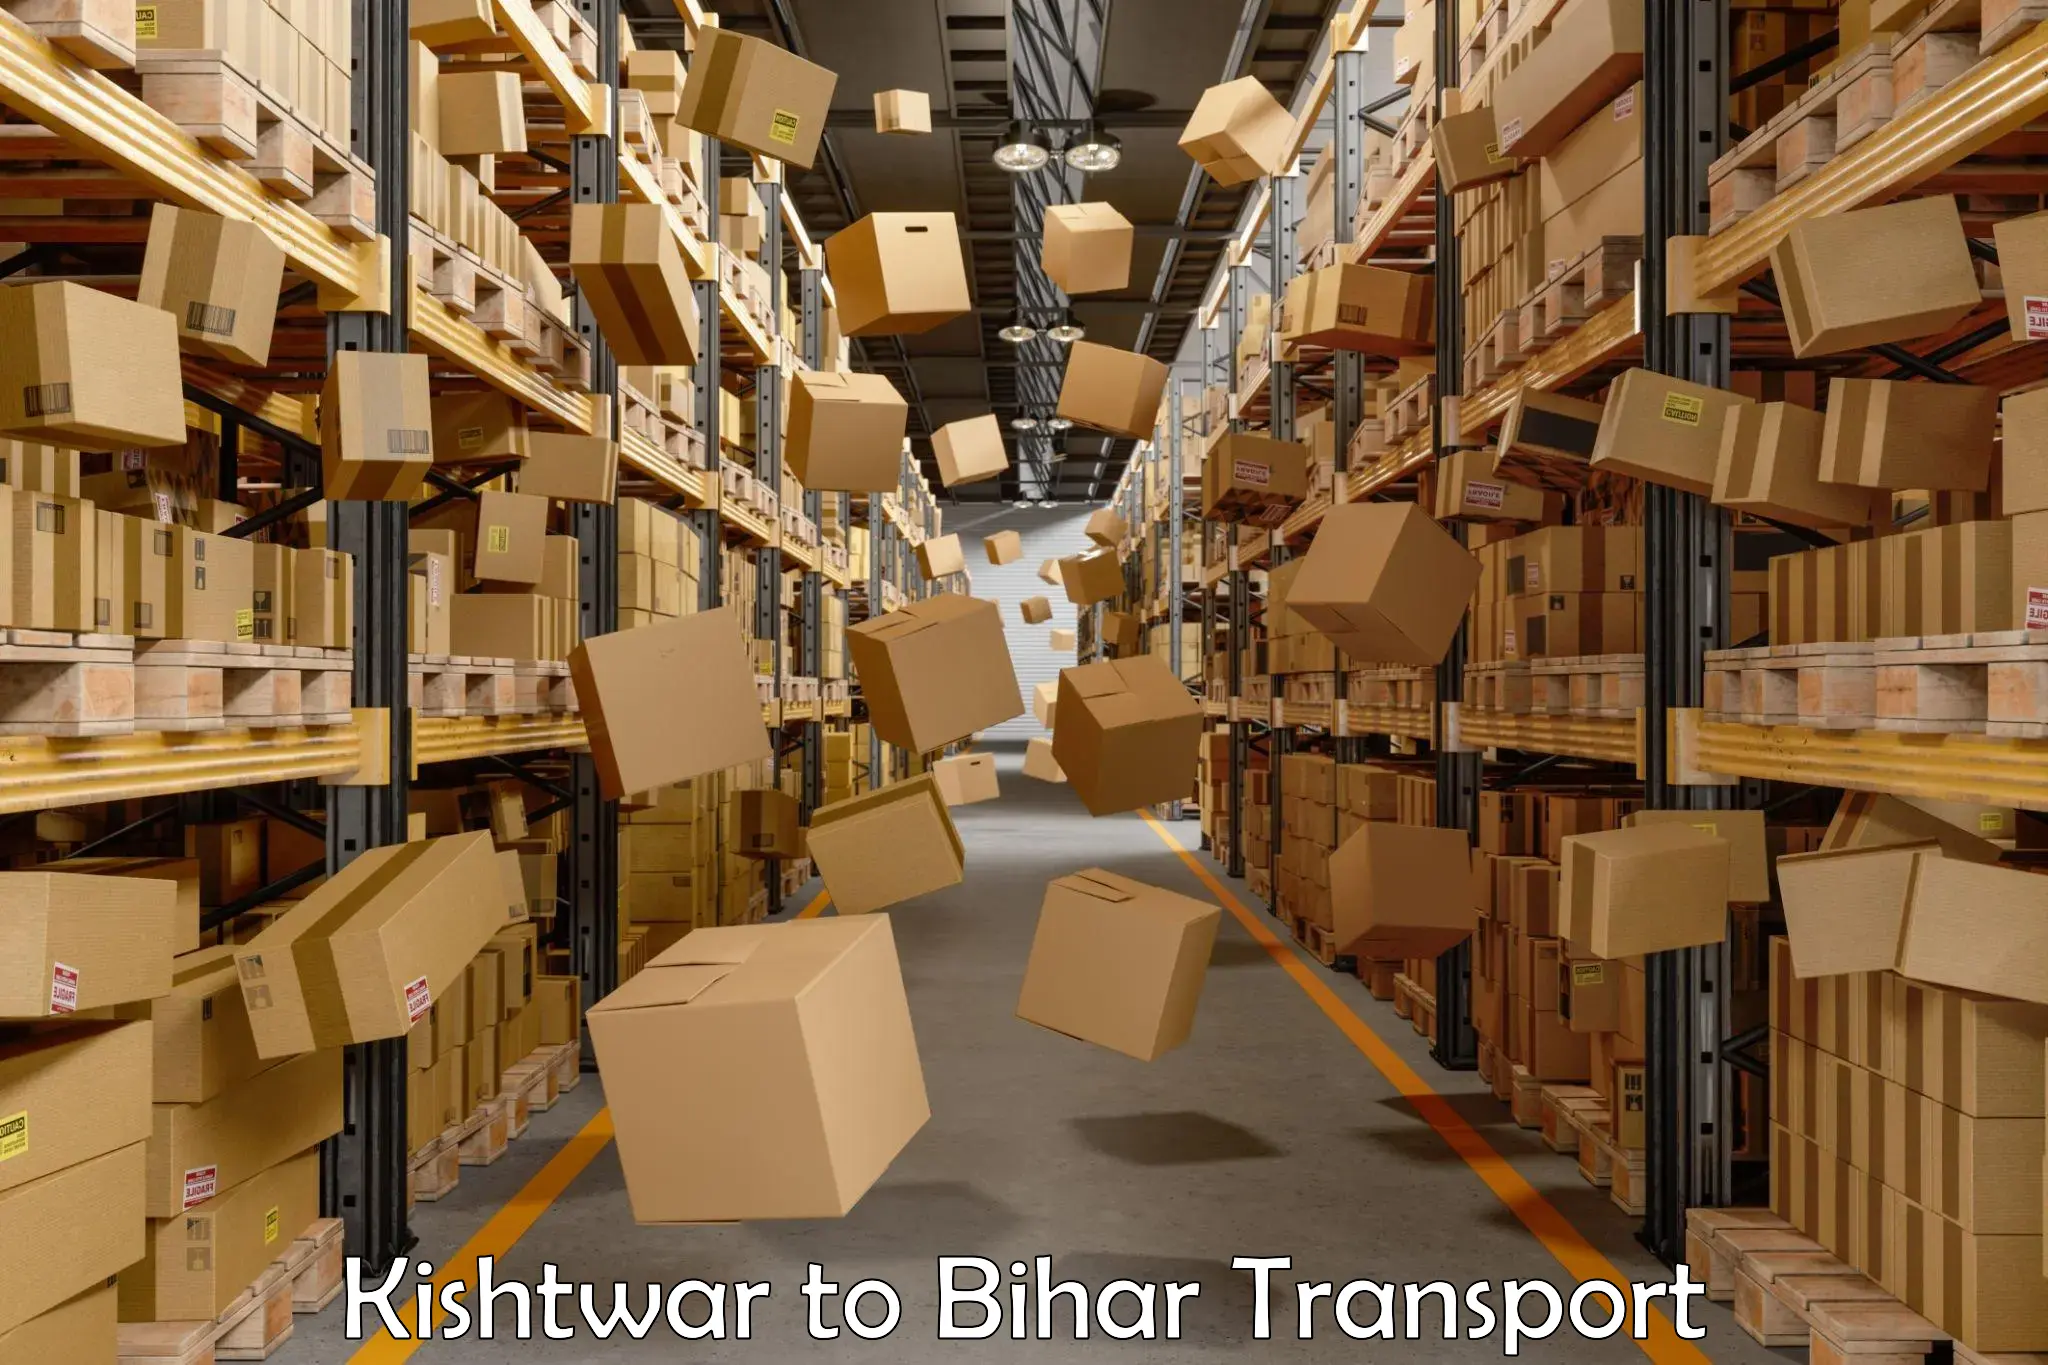 Goods delivery service Kishtwar to Bikramganj